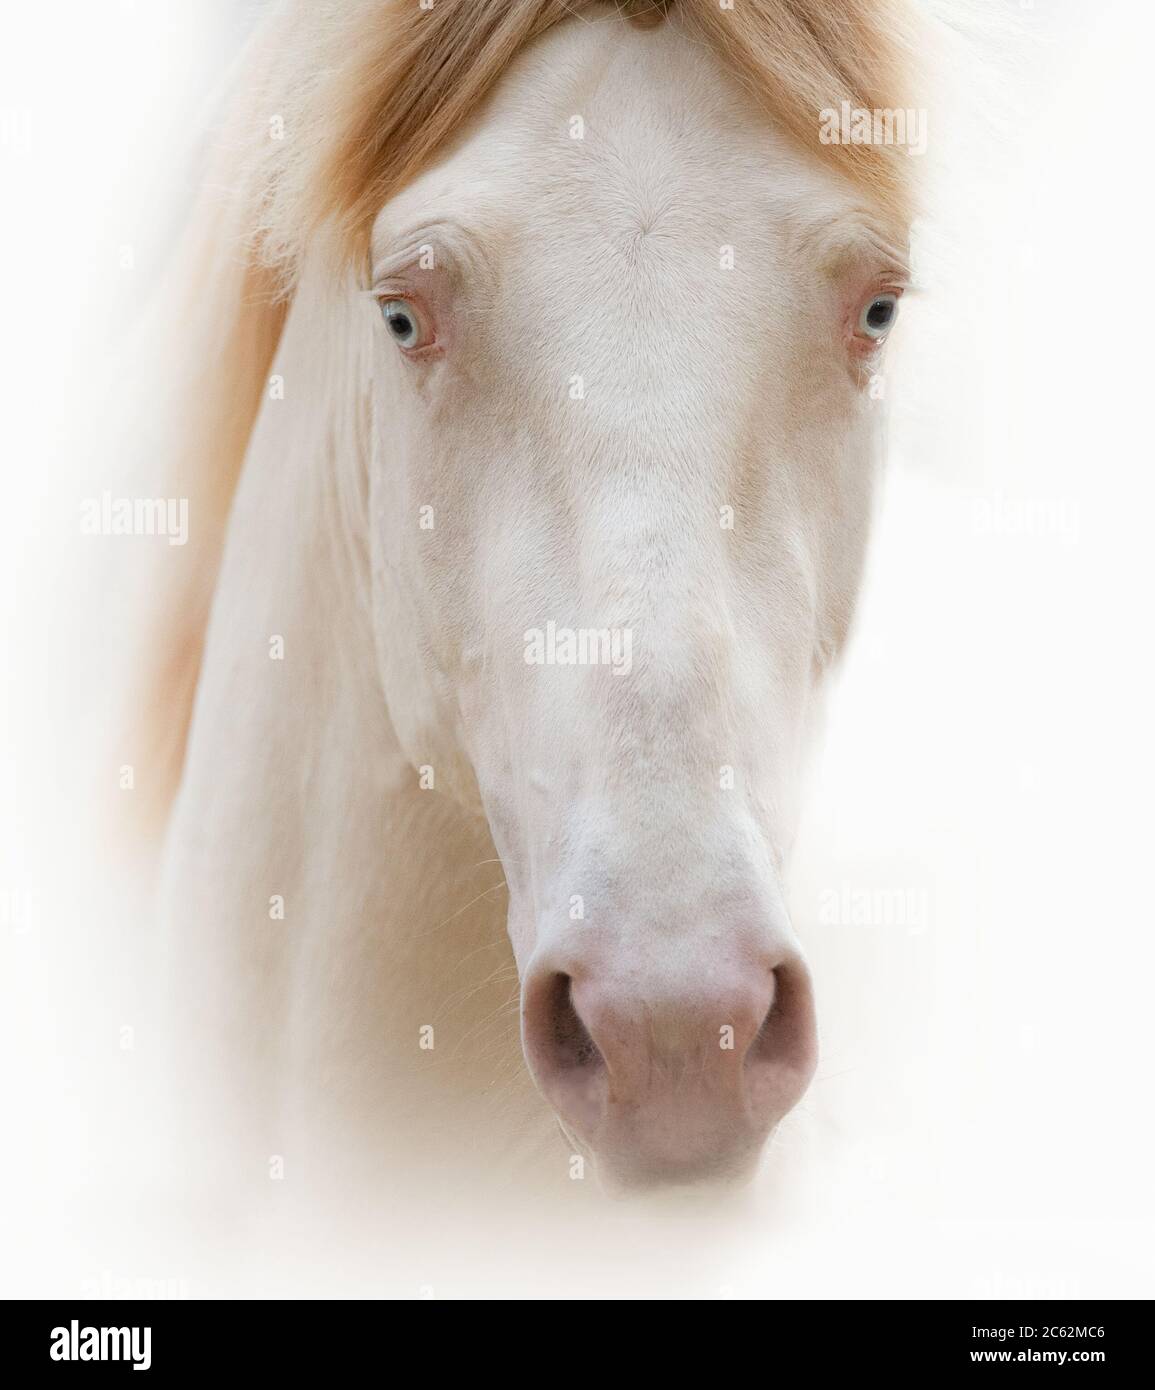 Bel ritratto a cavallo con occhi blu cremello in chiave alta Foto Stock